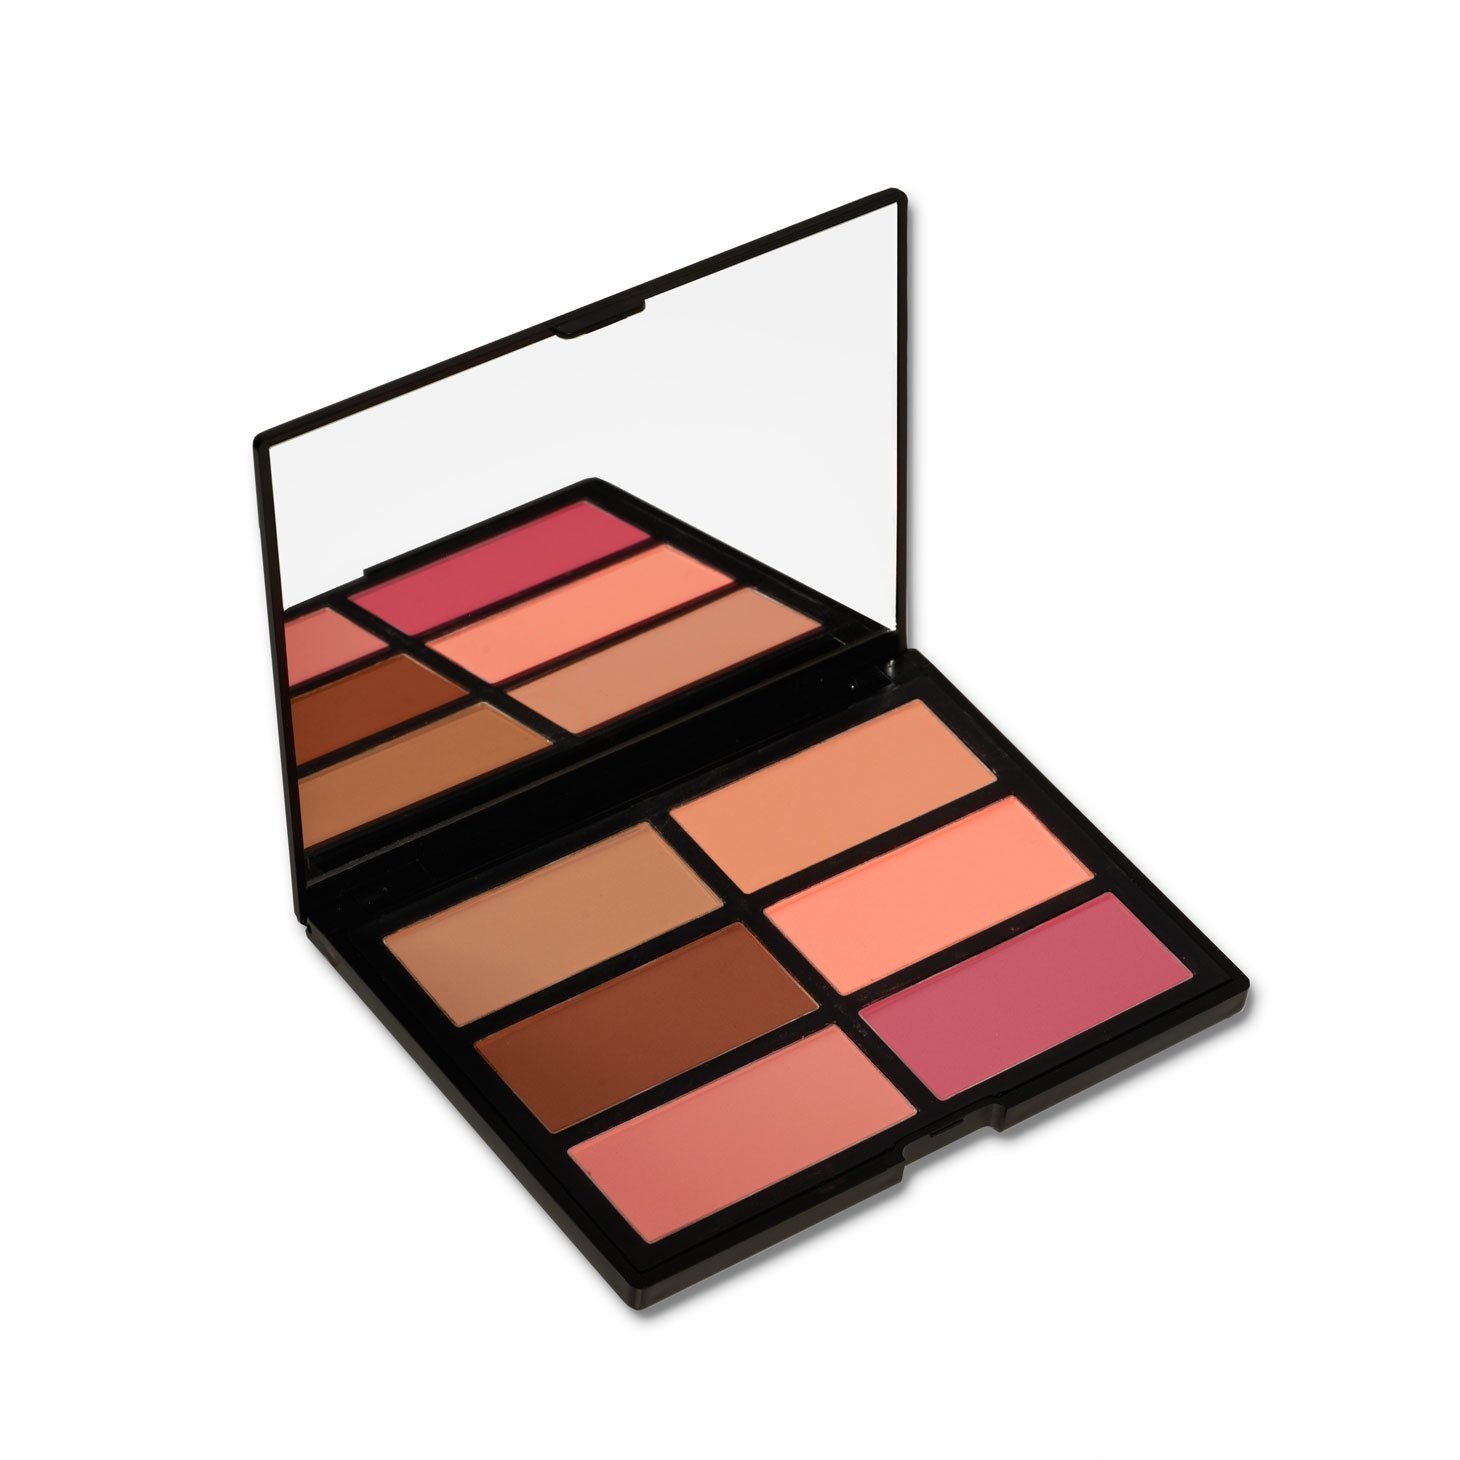 Cozzette Beauty Infinite Blush Palette (6 Shades) - ADDROS.COM